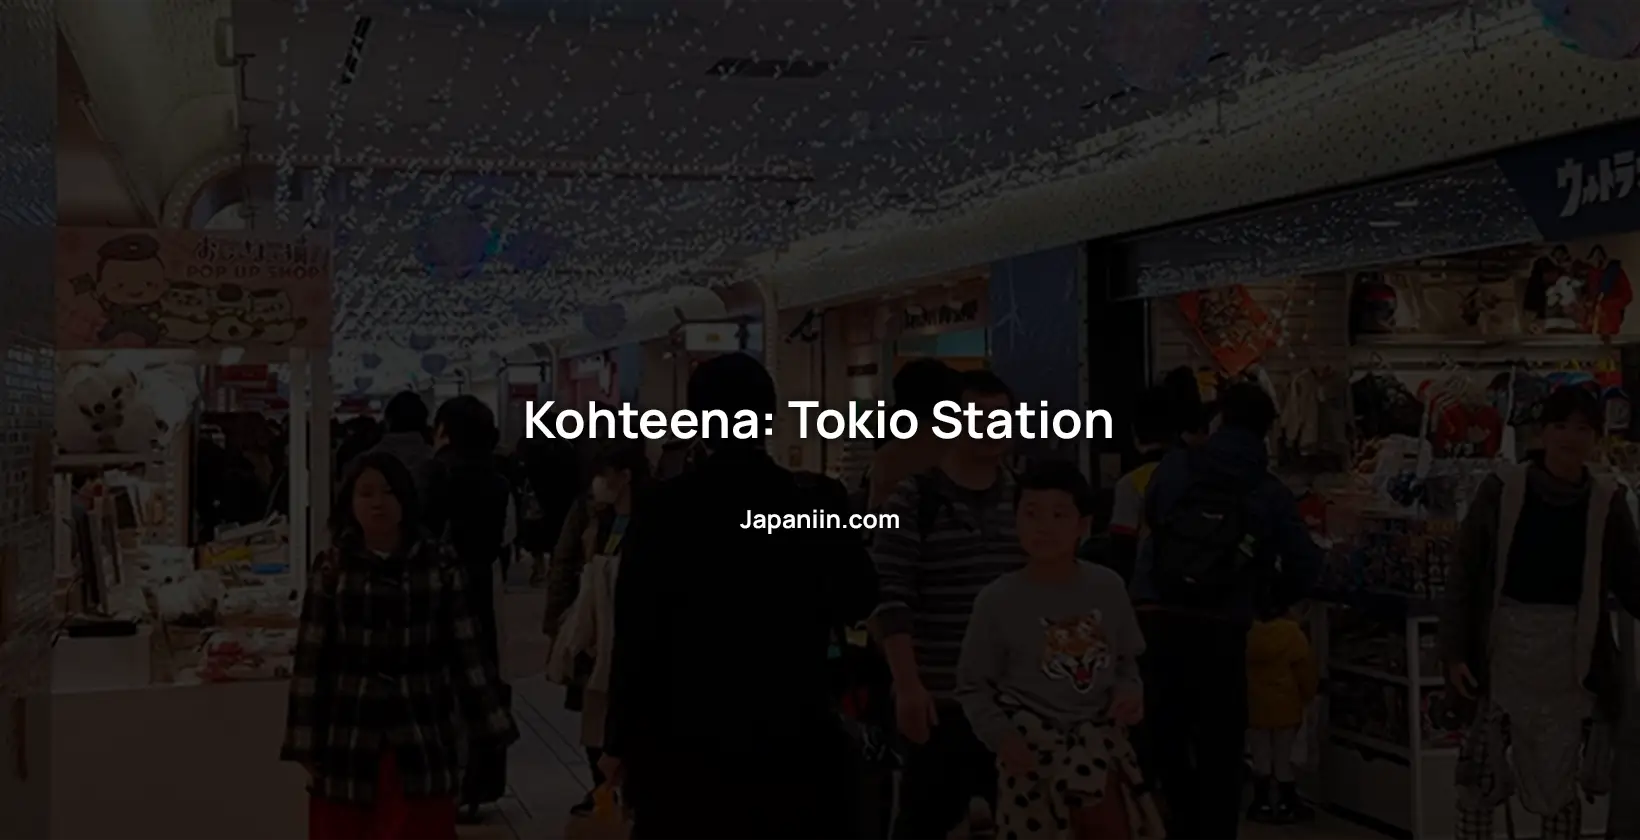 Kohteena Tokio Station